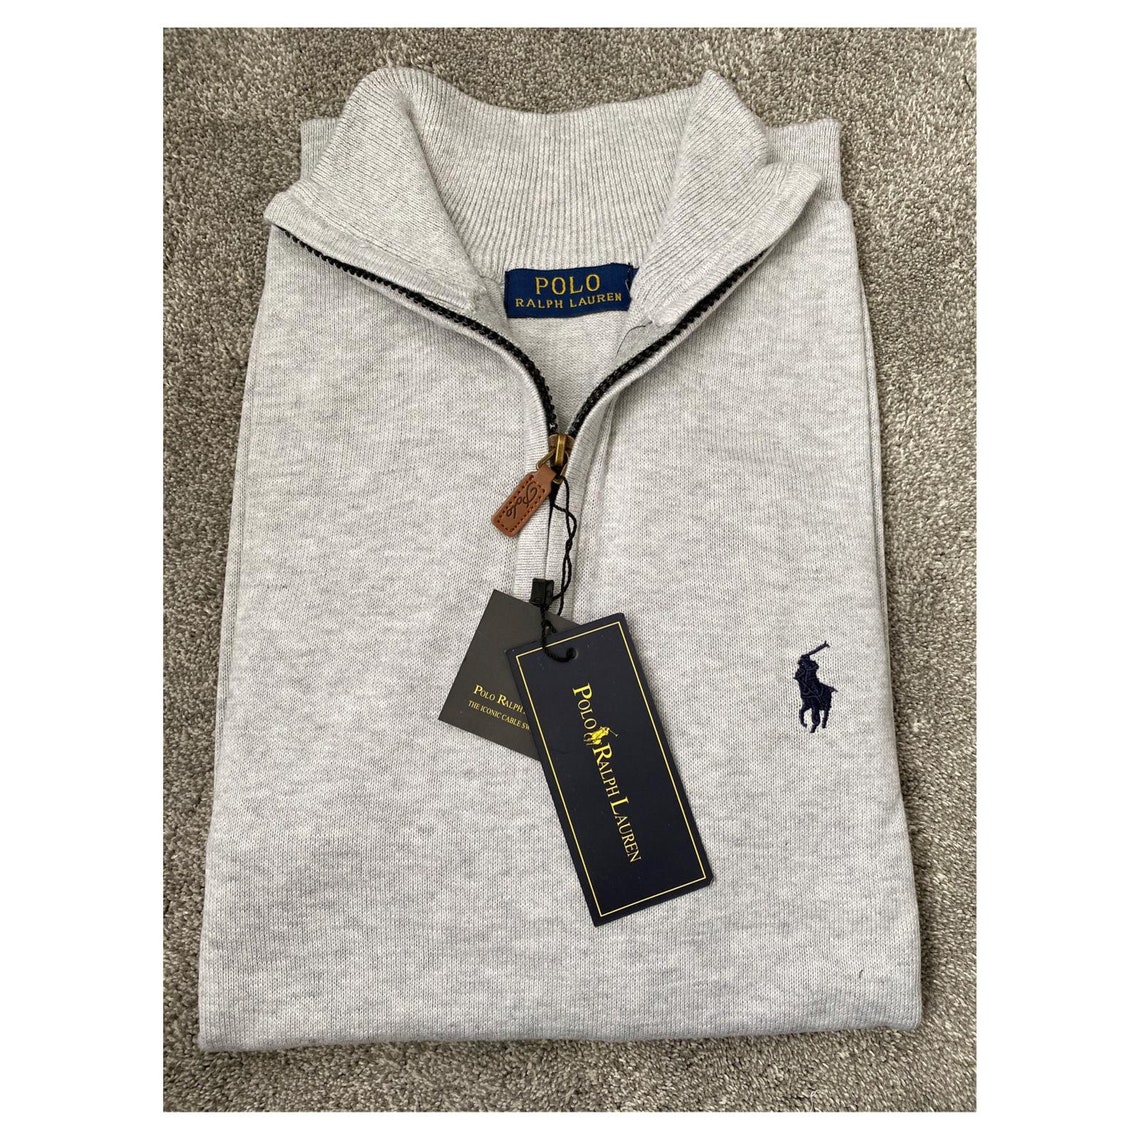 Brand New Ralph Lauren Half Zip Jumper Sweater Grey Navy | Etsy